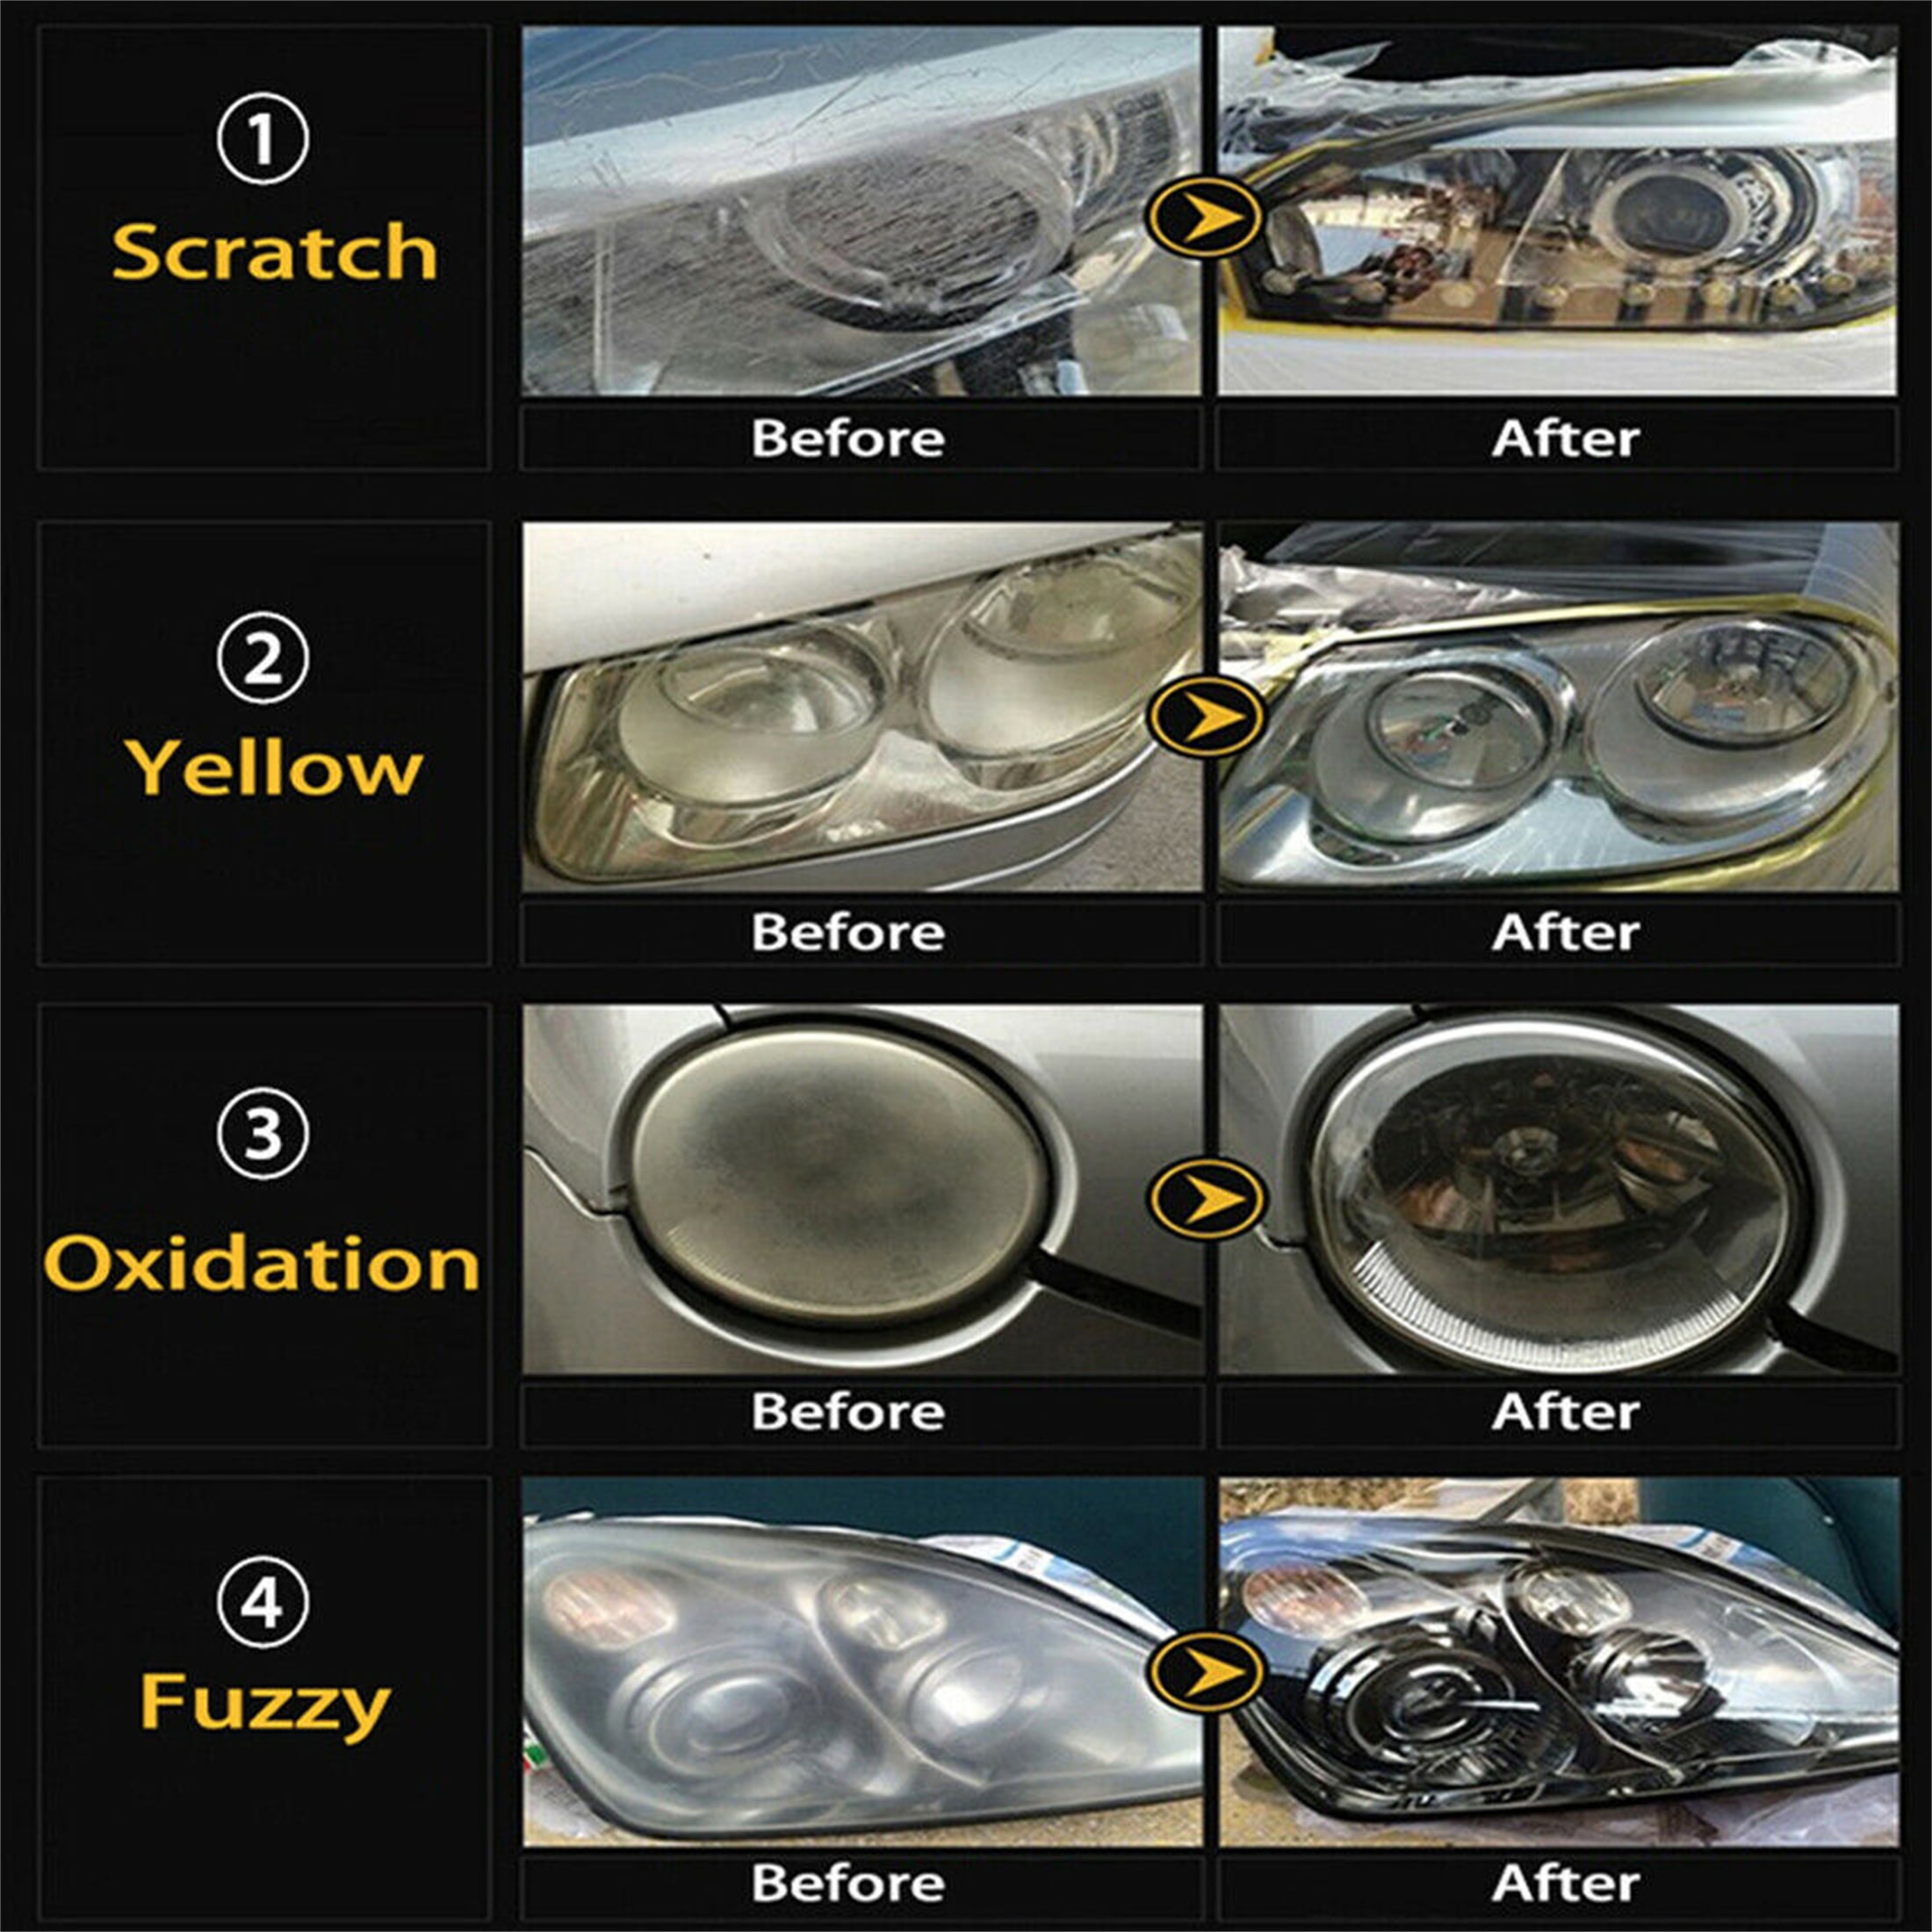 Car Headlight Cleaner Restore Lens Repair Headlight Repair Polishing Tool  Kit